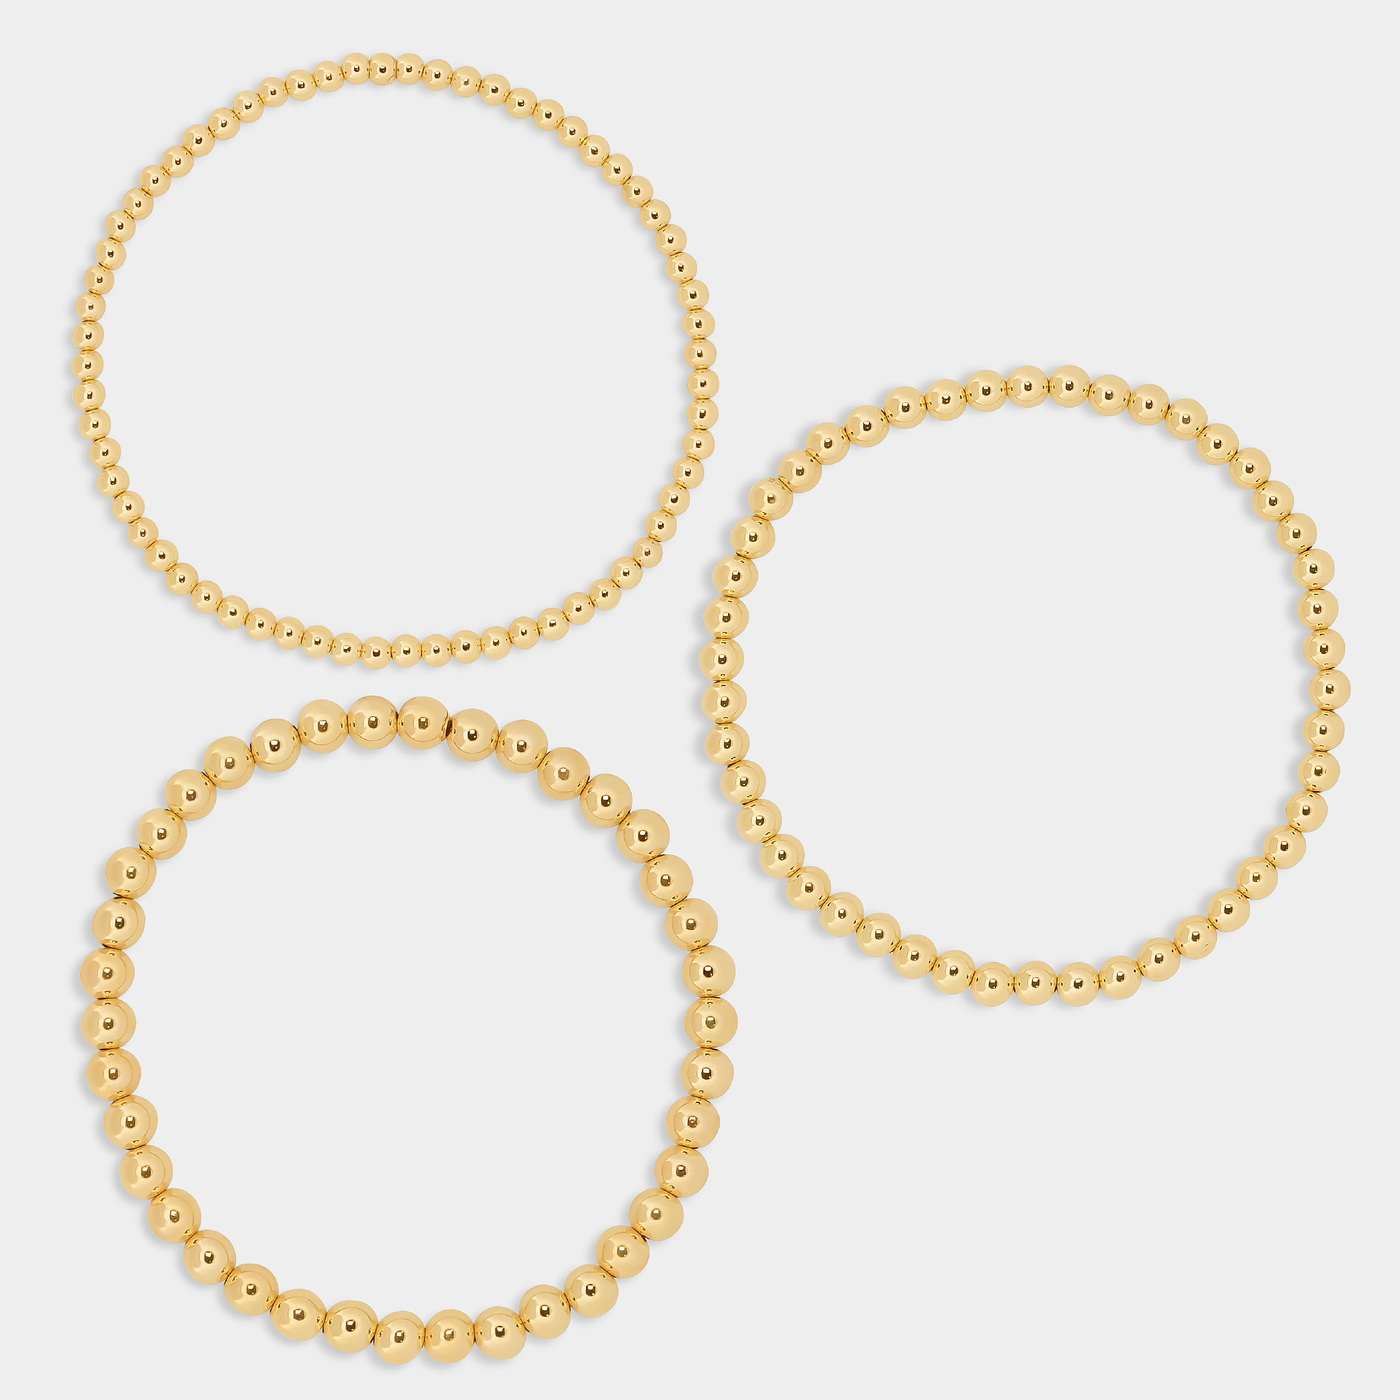 14k gold filled beaded bracelet stack set